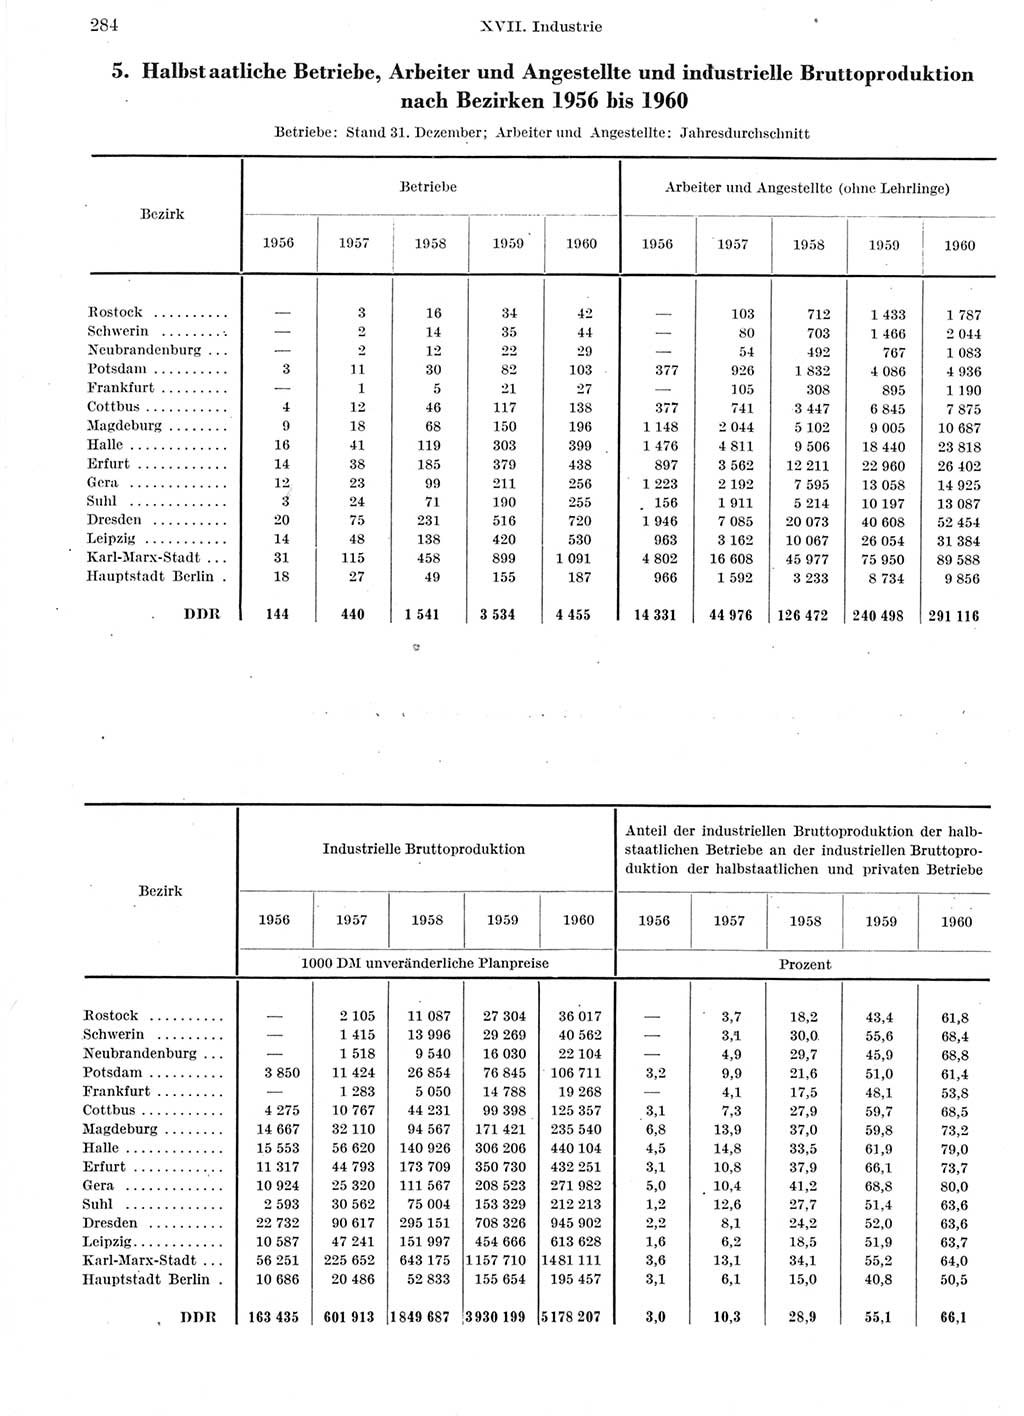 Statistisches Jahrbuch der Deutschen Demokratischen Republik (DDR) 1960-1961, Seite 284 (Stat. Jb. DDR 1960-1961, S. 284)